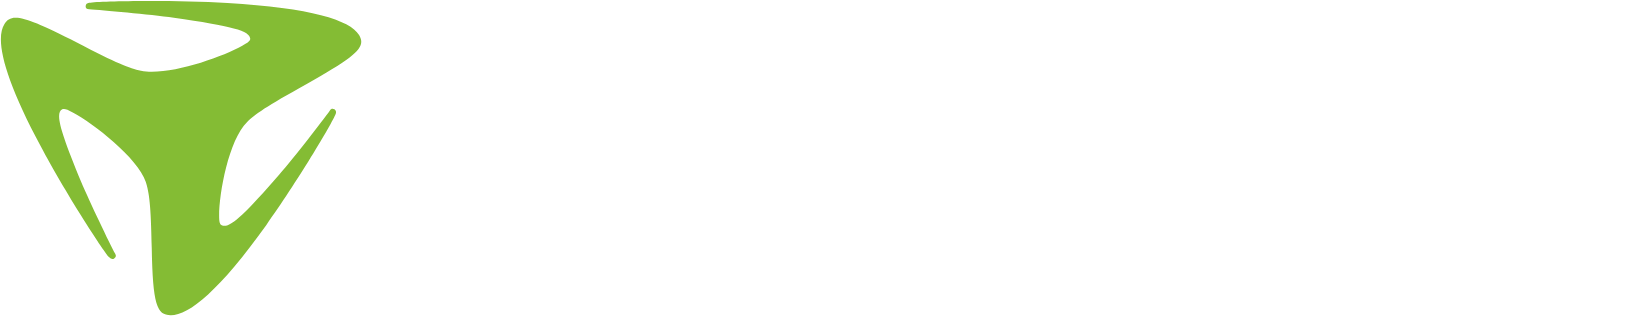 Freenet logo large for dark backgrounds (transparent PNG)